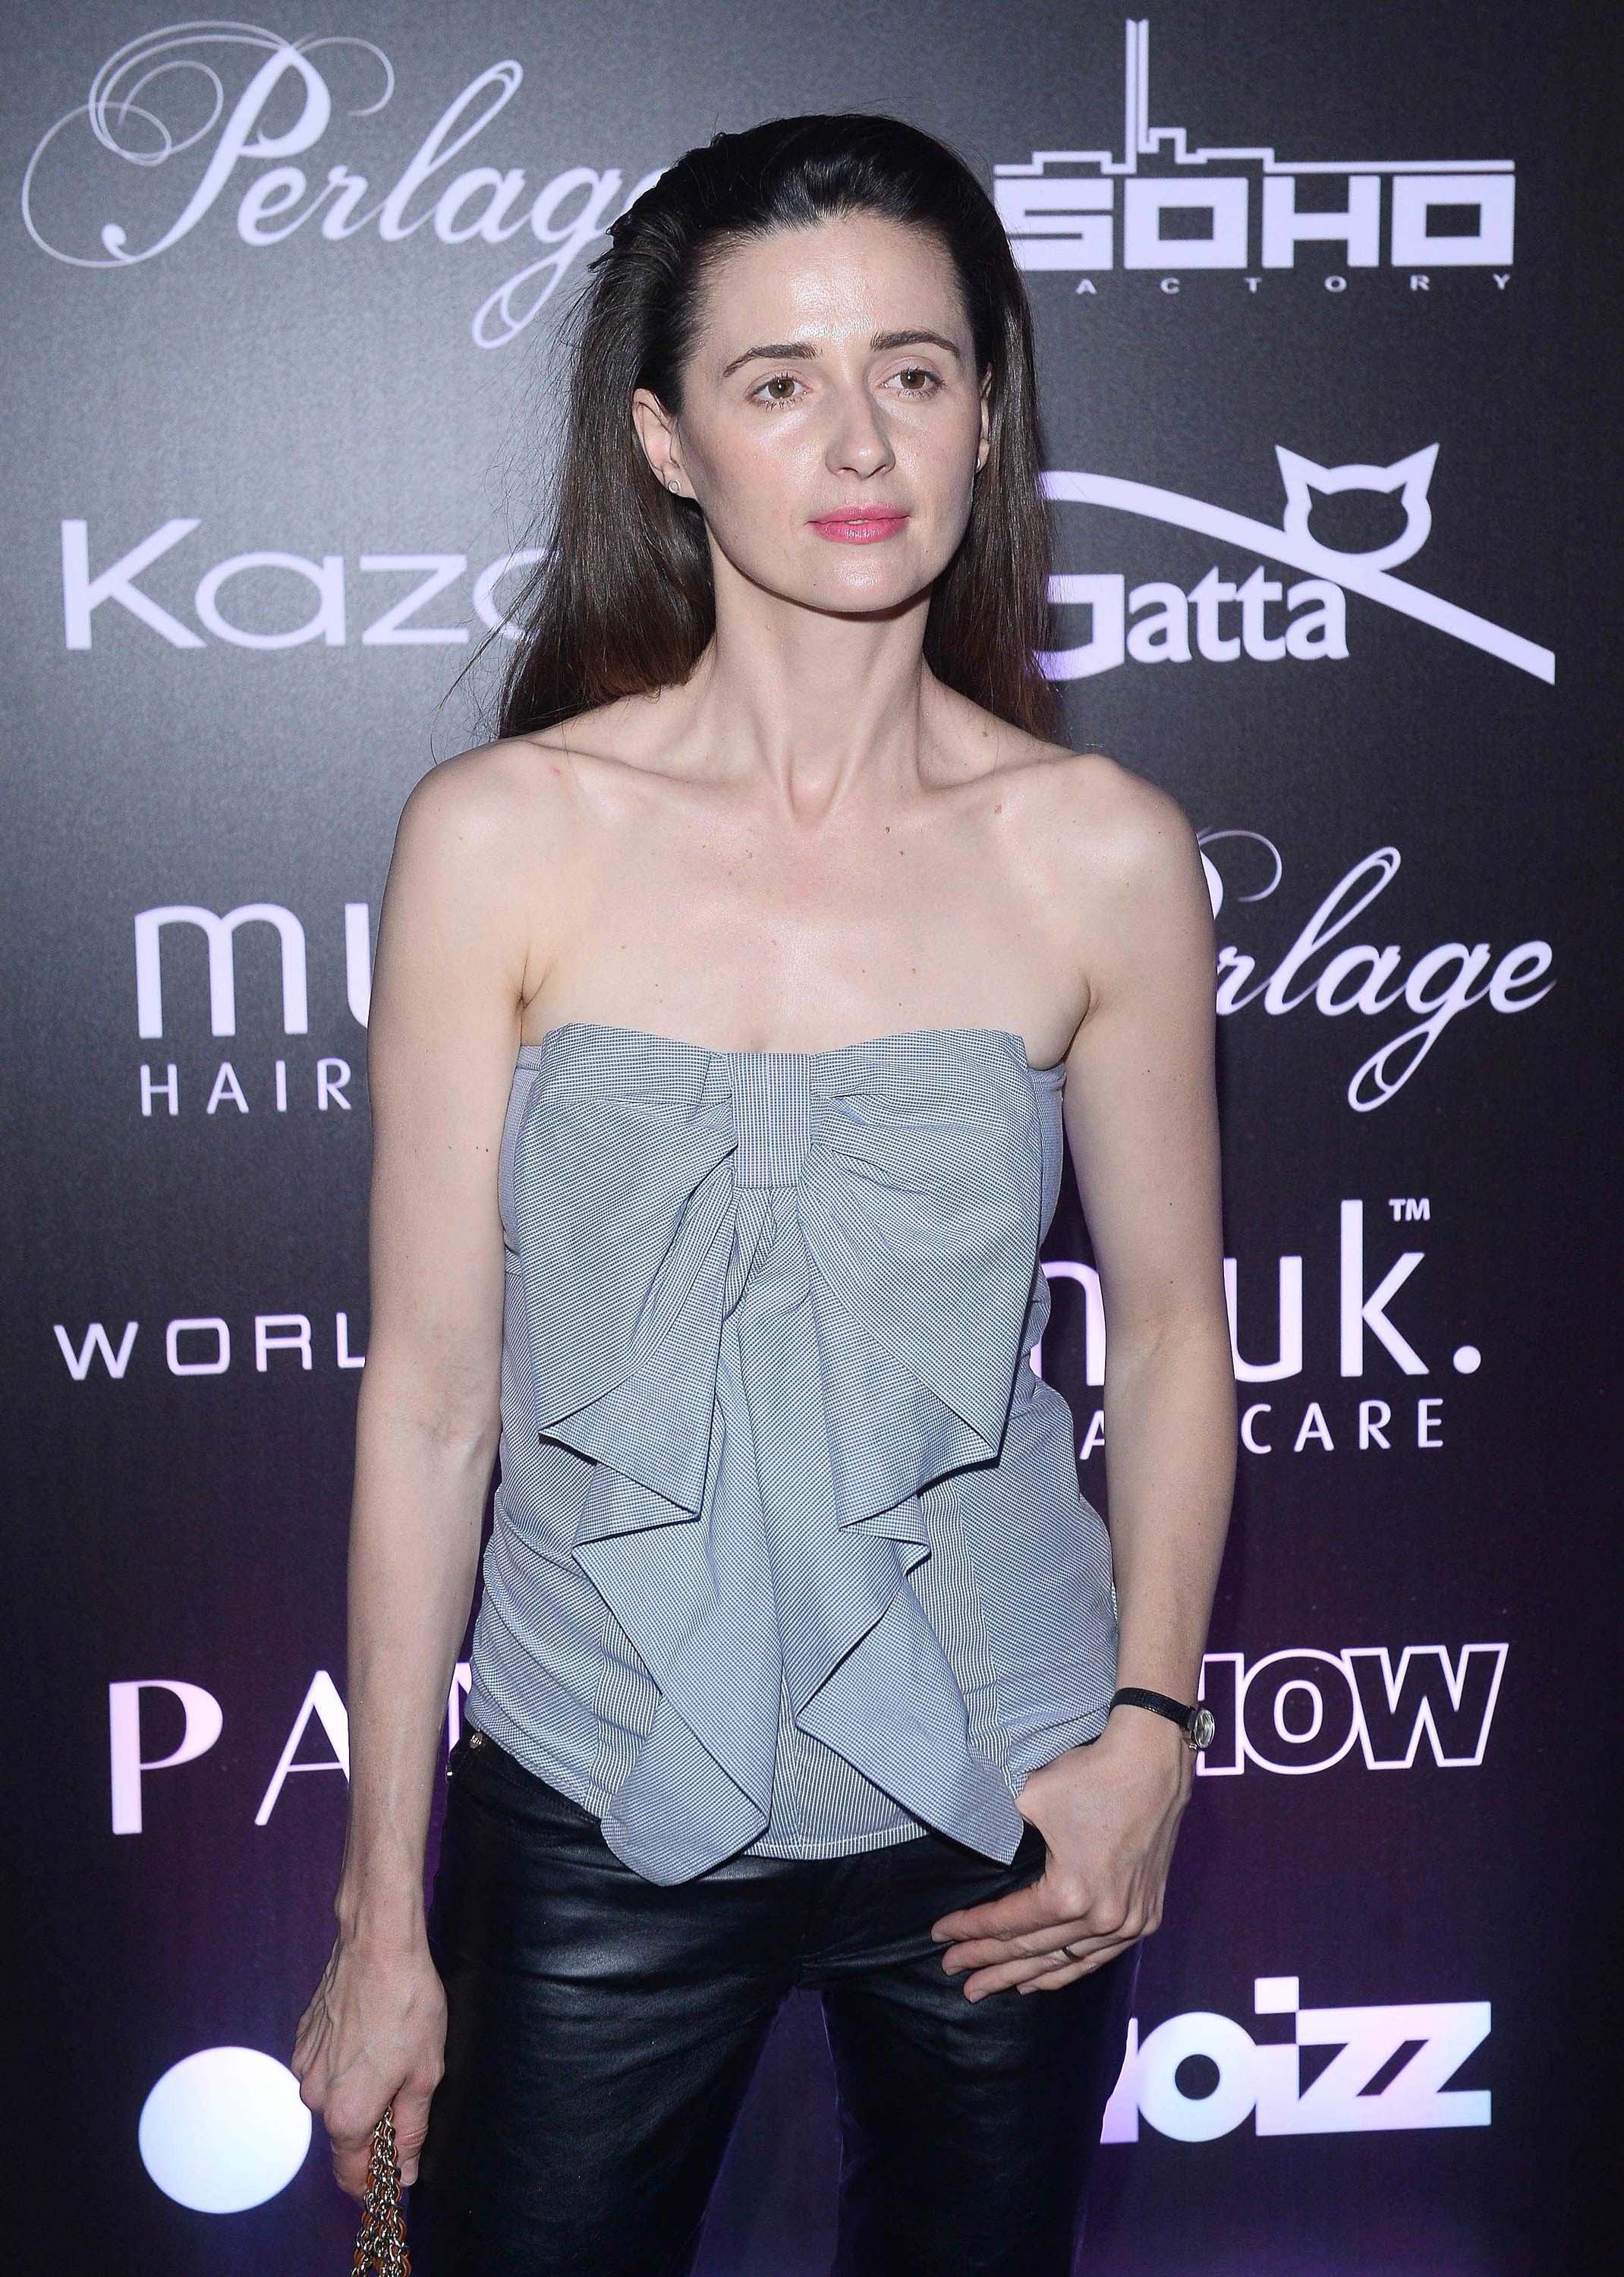 Agnieszka Grochowska attends the Pokaz Roberta Kupisza Fashion Show